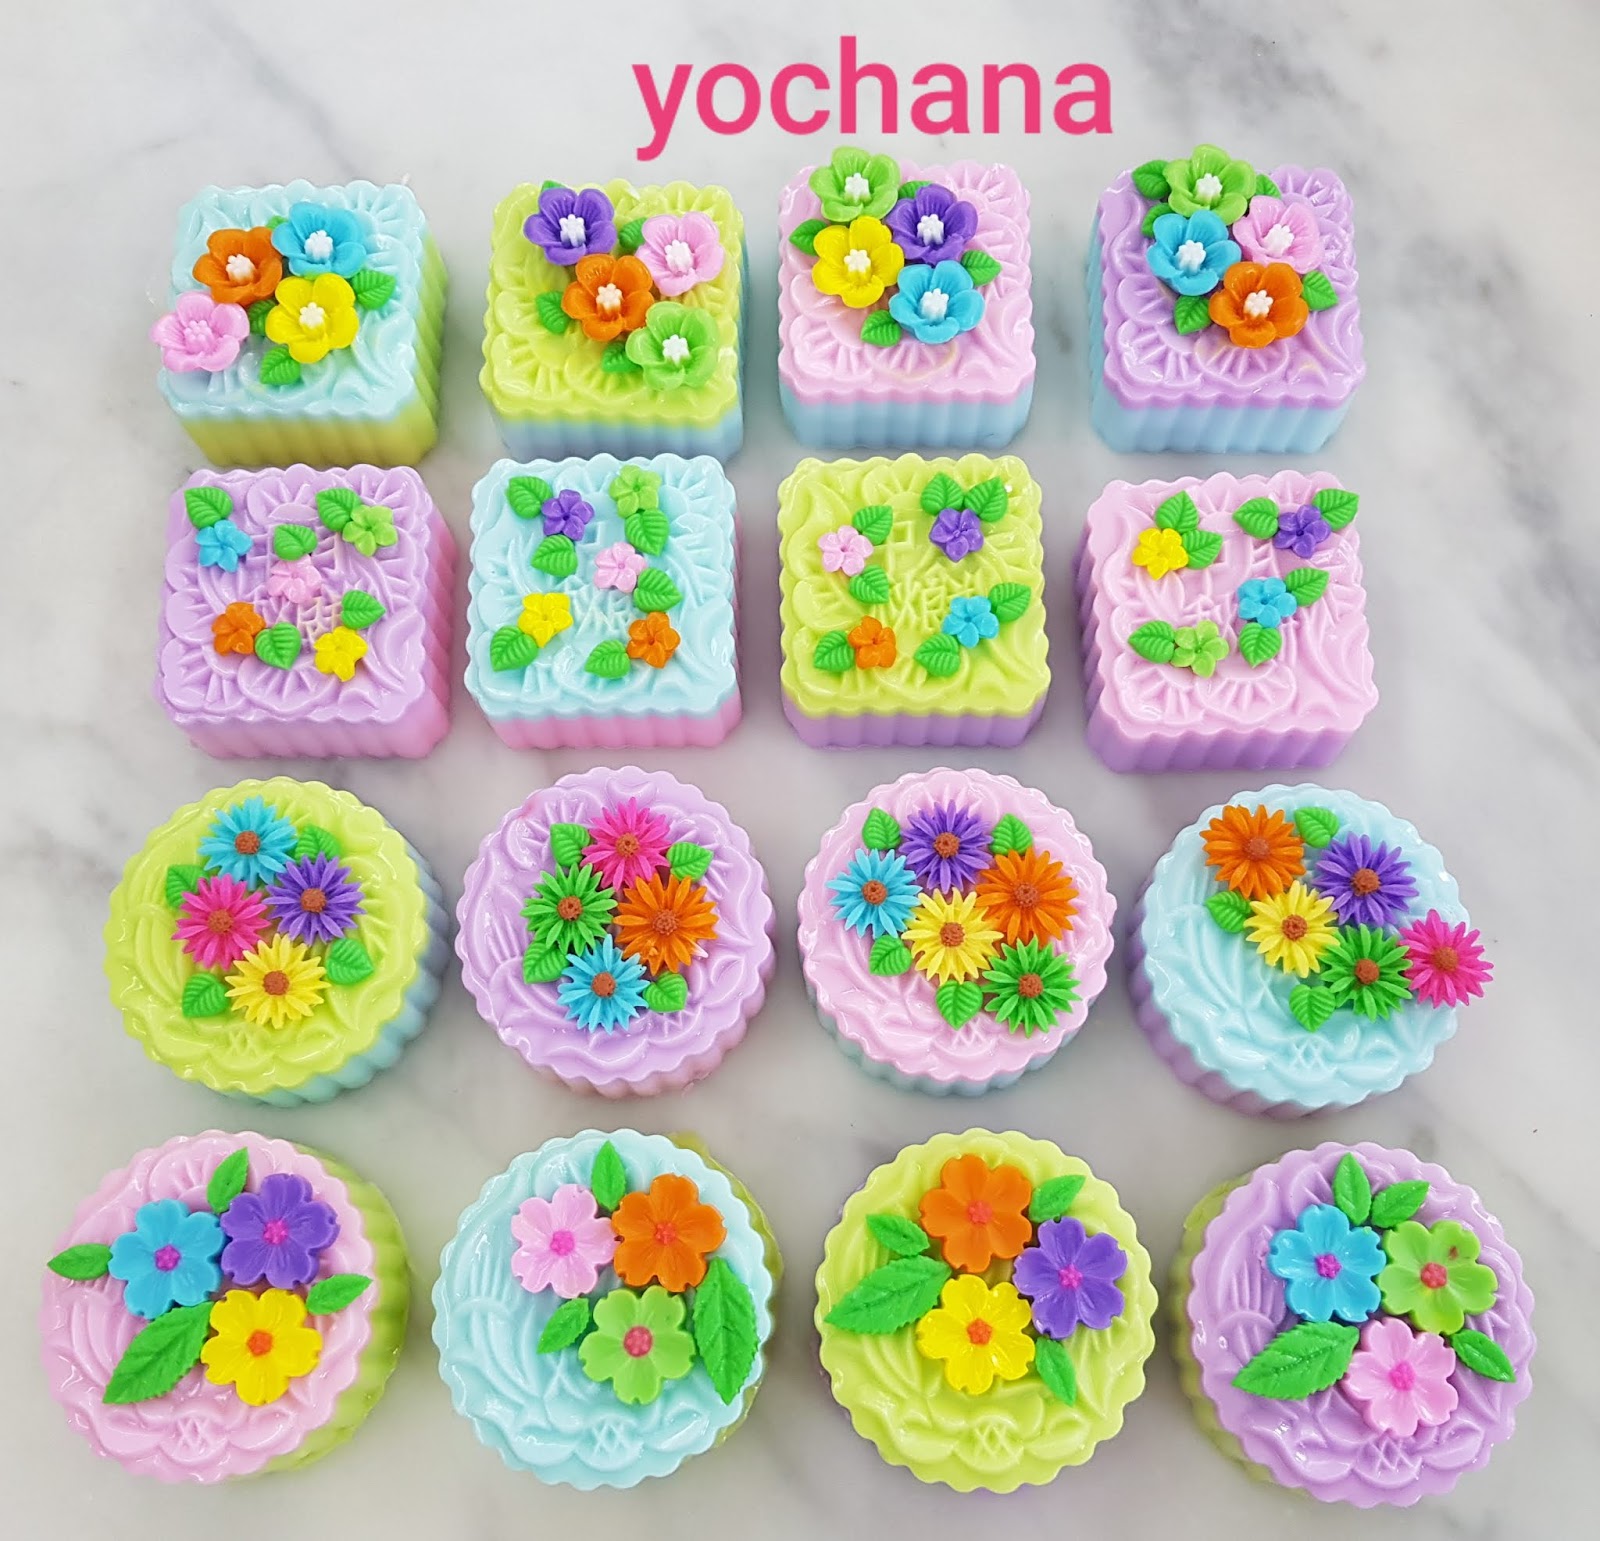 Yochana's Cake Delight!